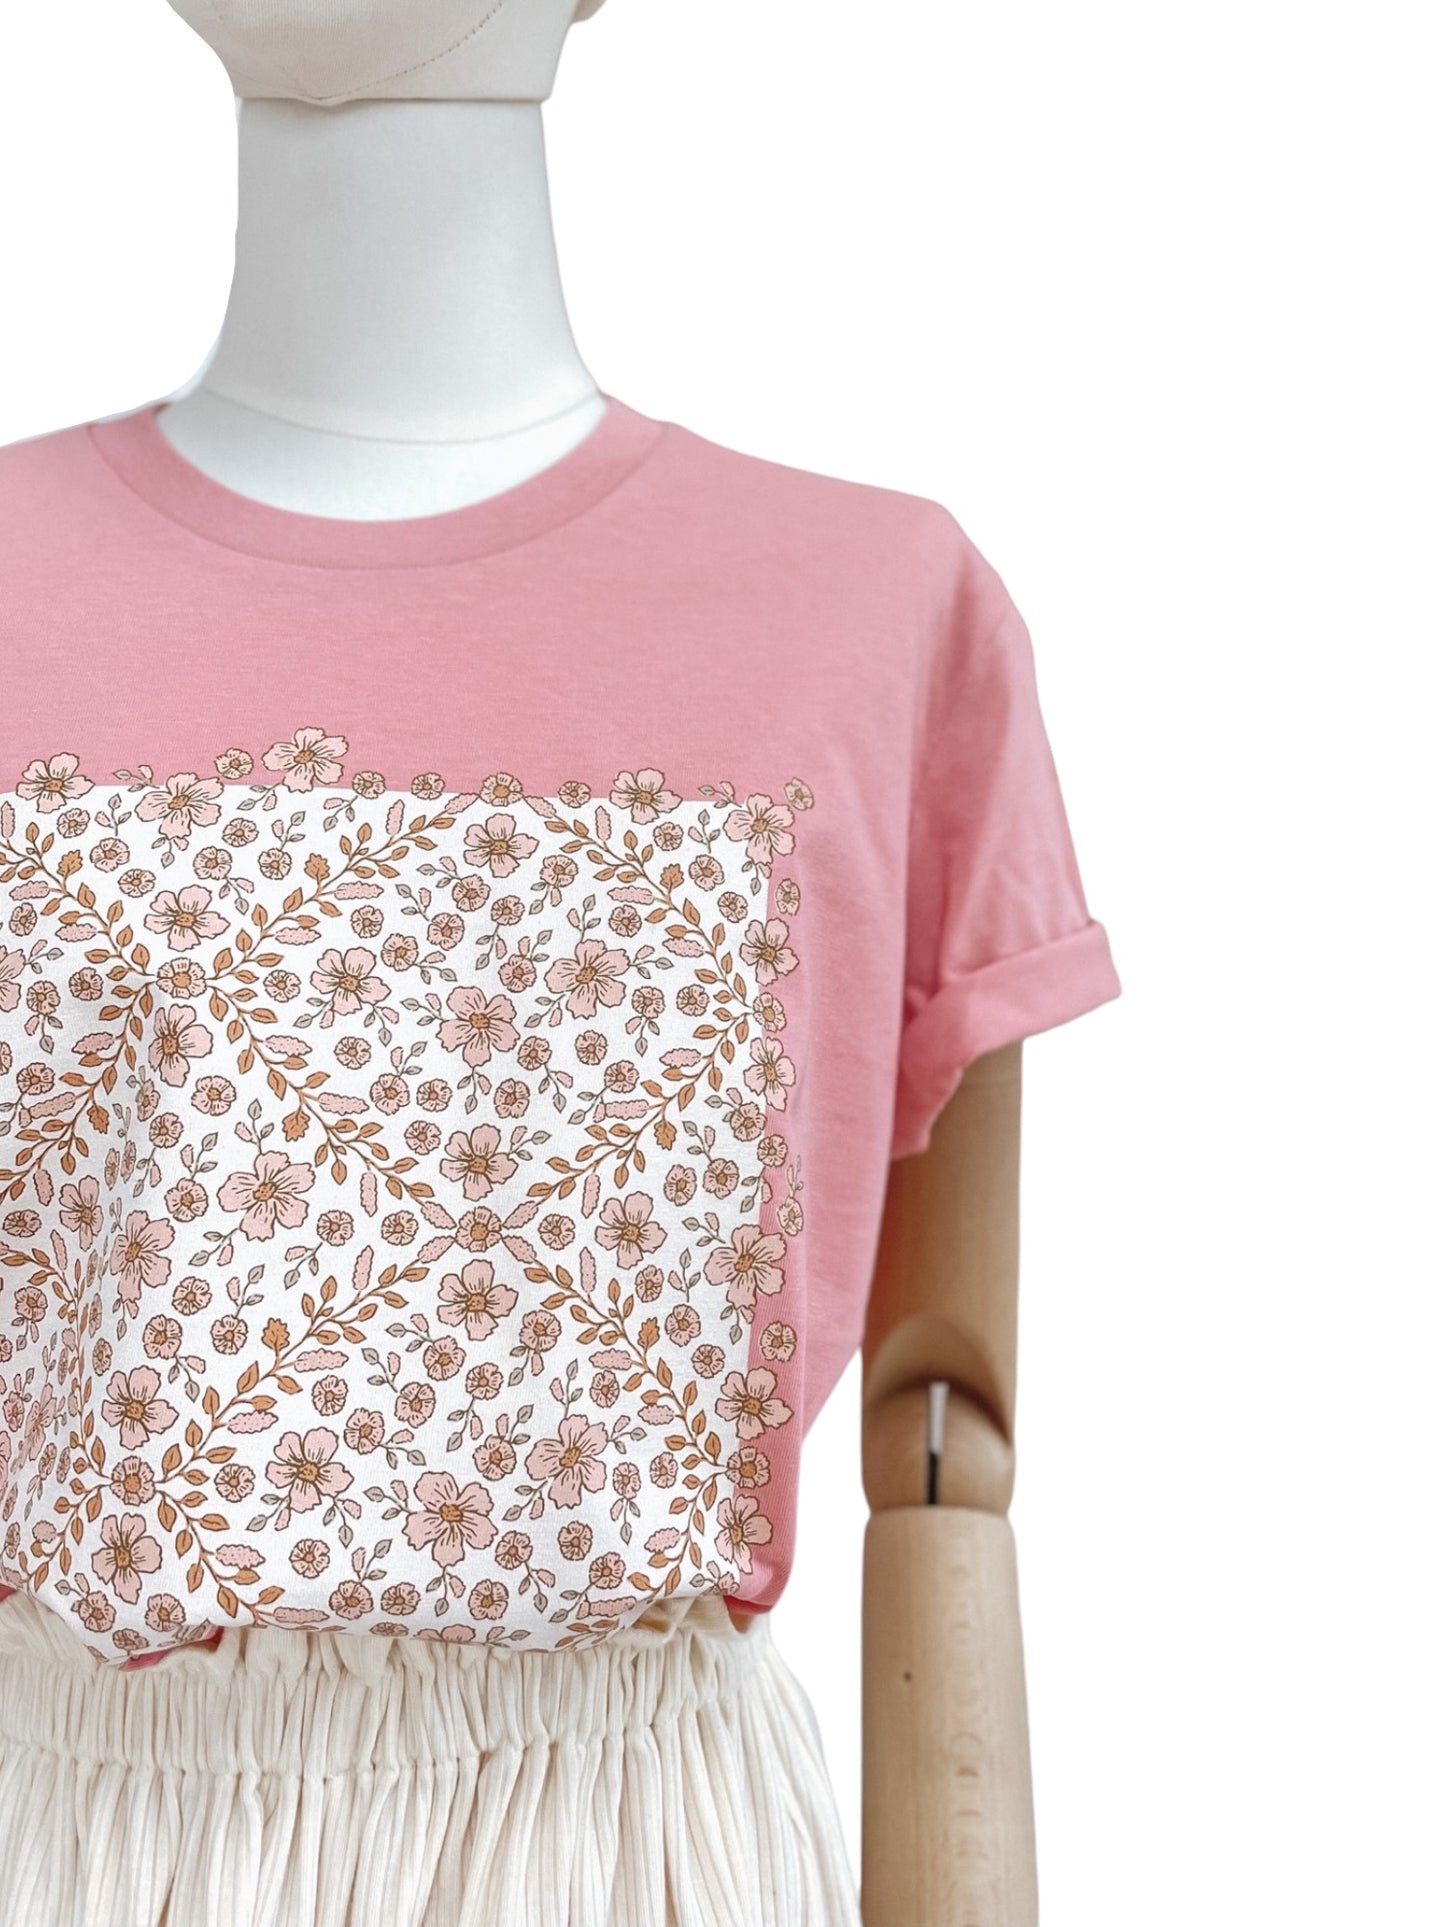 T-shirt / floral garland / bubble gum